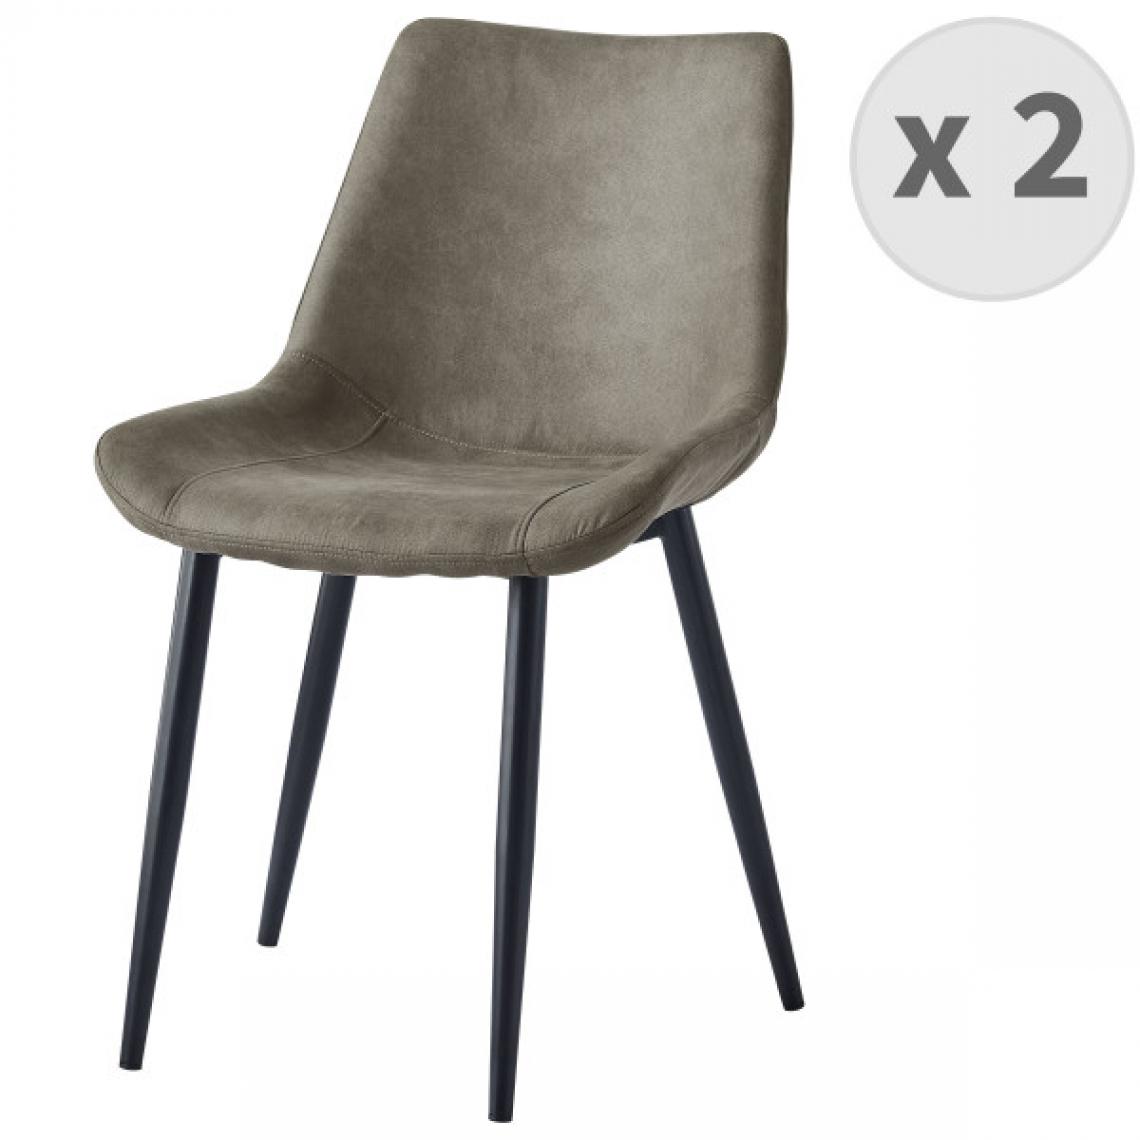 Moloo - BRISTOL-Chaise vintage mf vintage brun clair pieds métal noir (x2) - Chaises